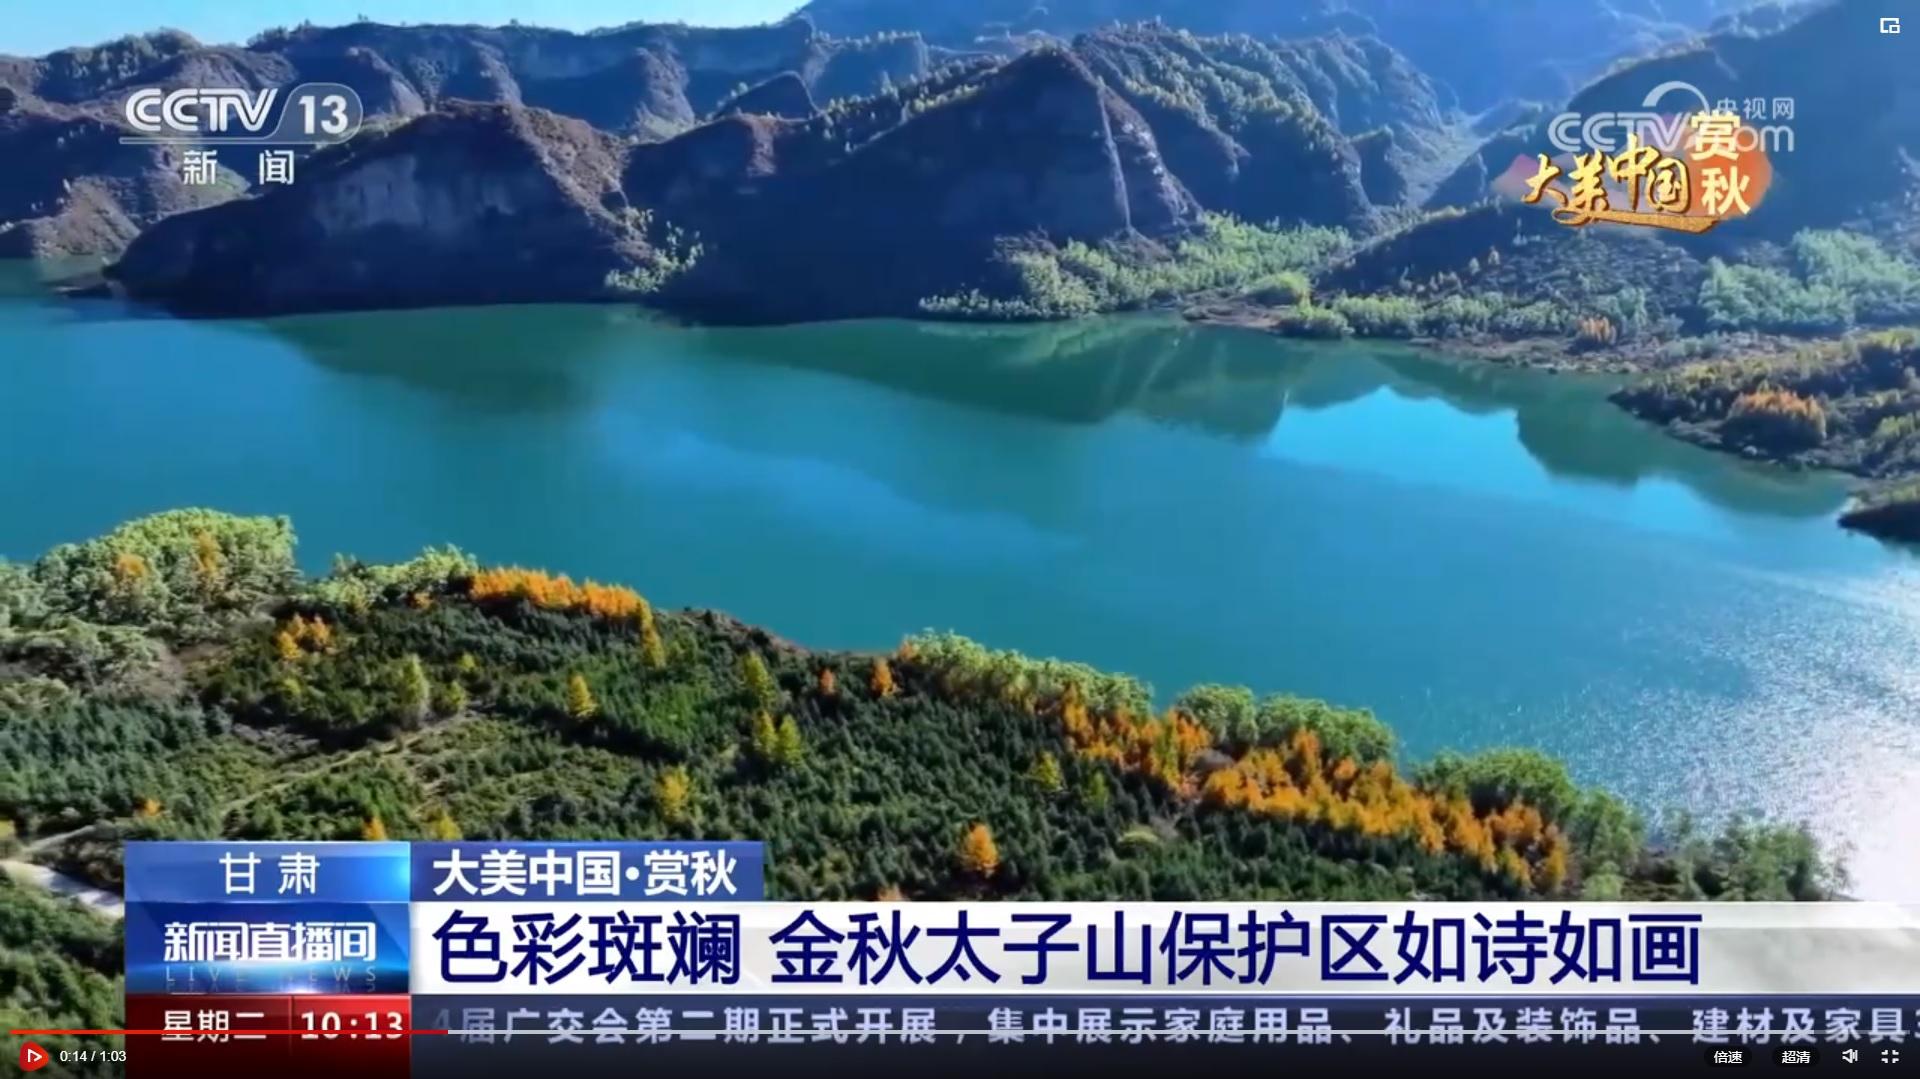 CCTV13【新闻直播间】大美中国·赏秋 甘肃 色彩斑斓 金秋太子山保护区如诗如画